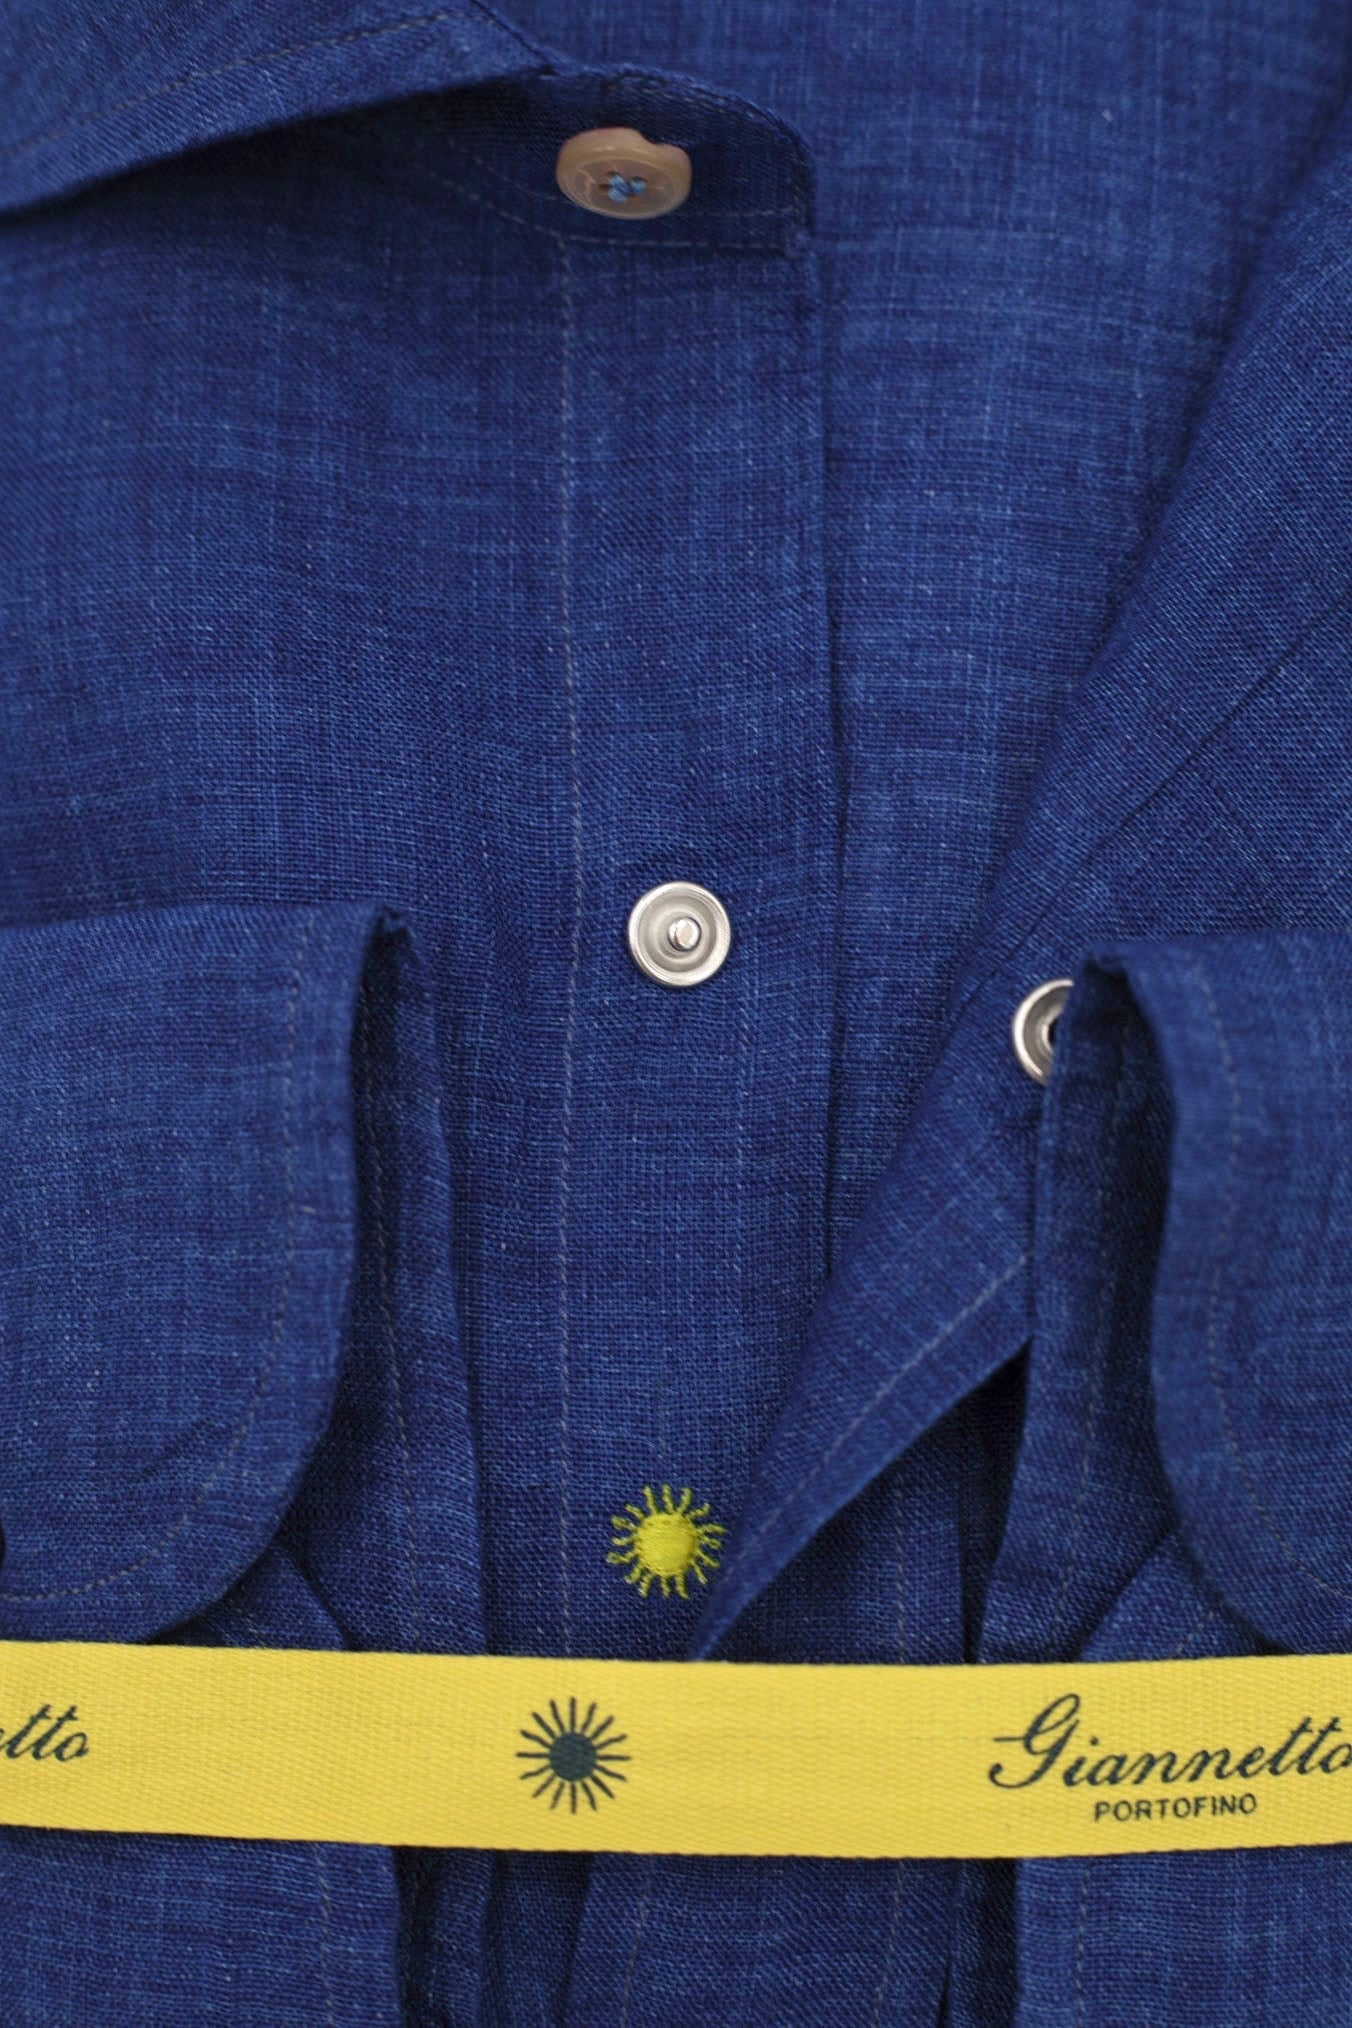 GIANNETTO PORTOFINO Blue Linen Shirt SLIM FIT